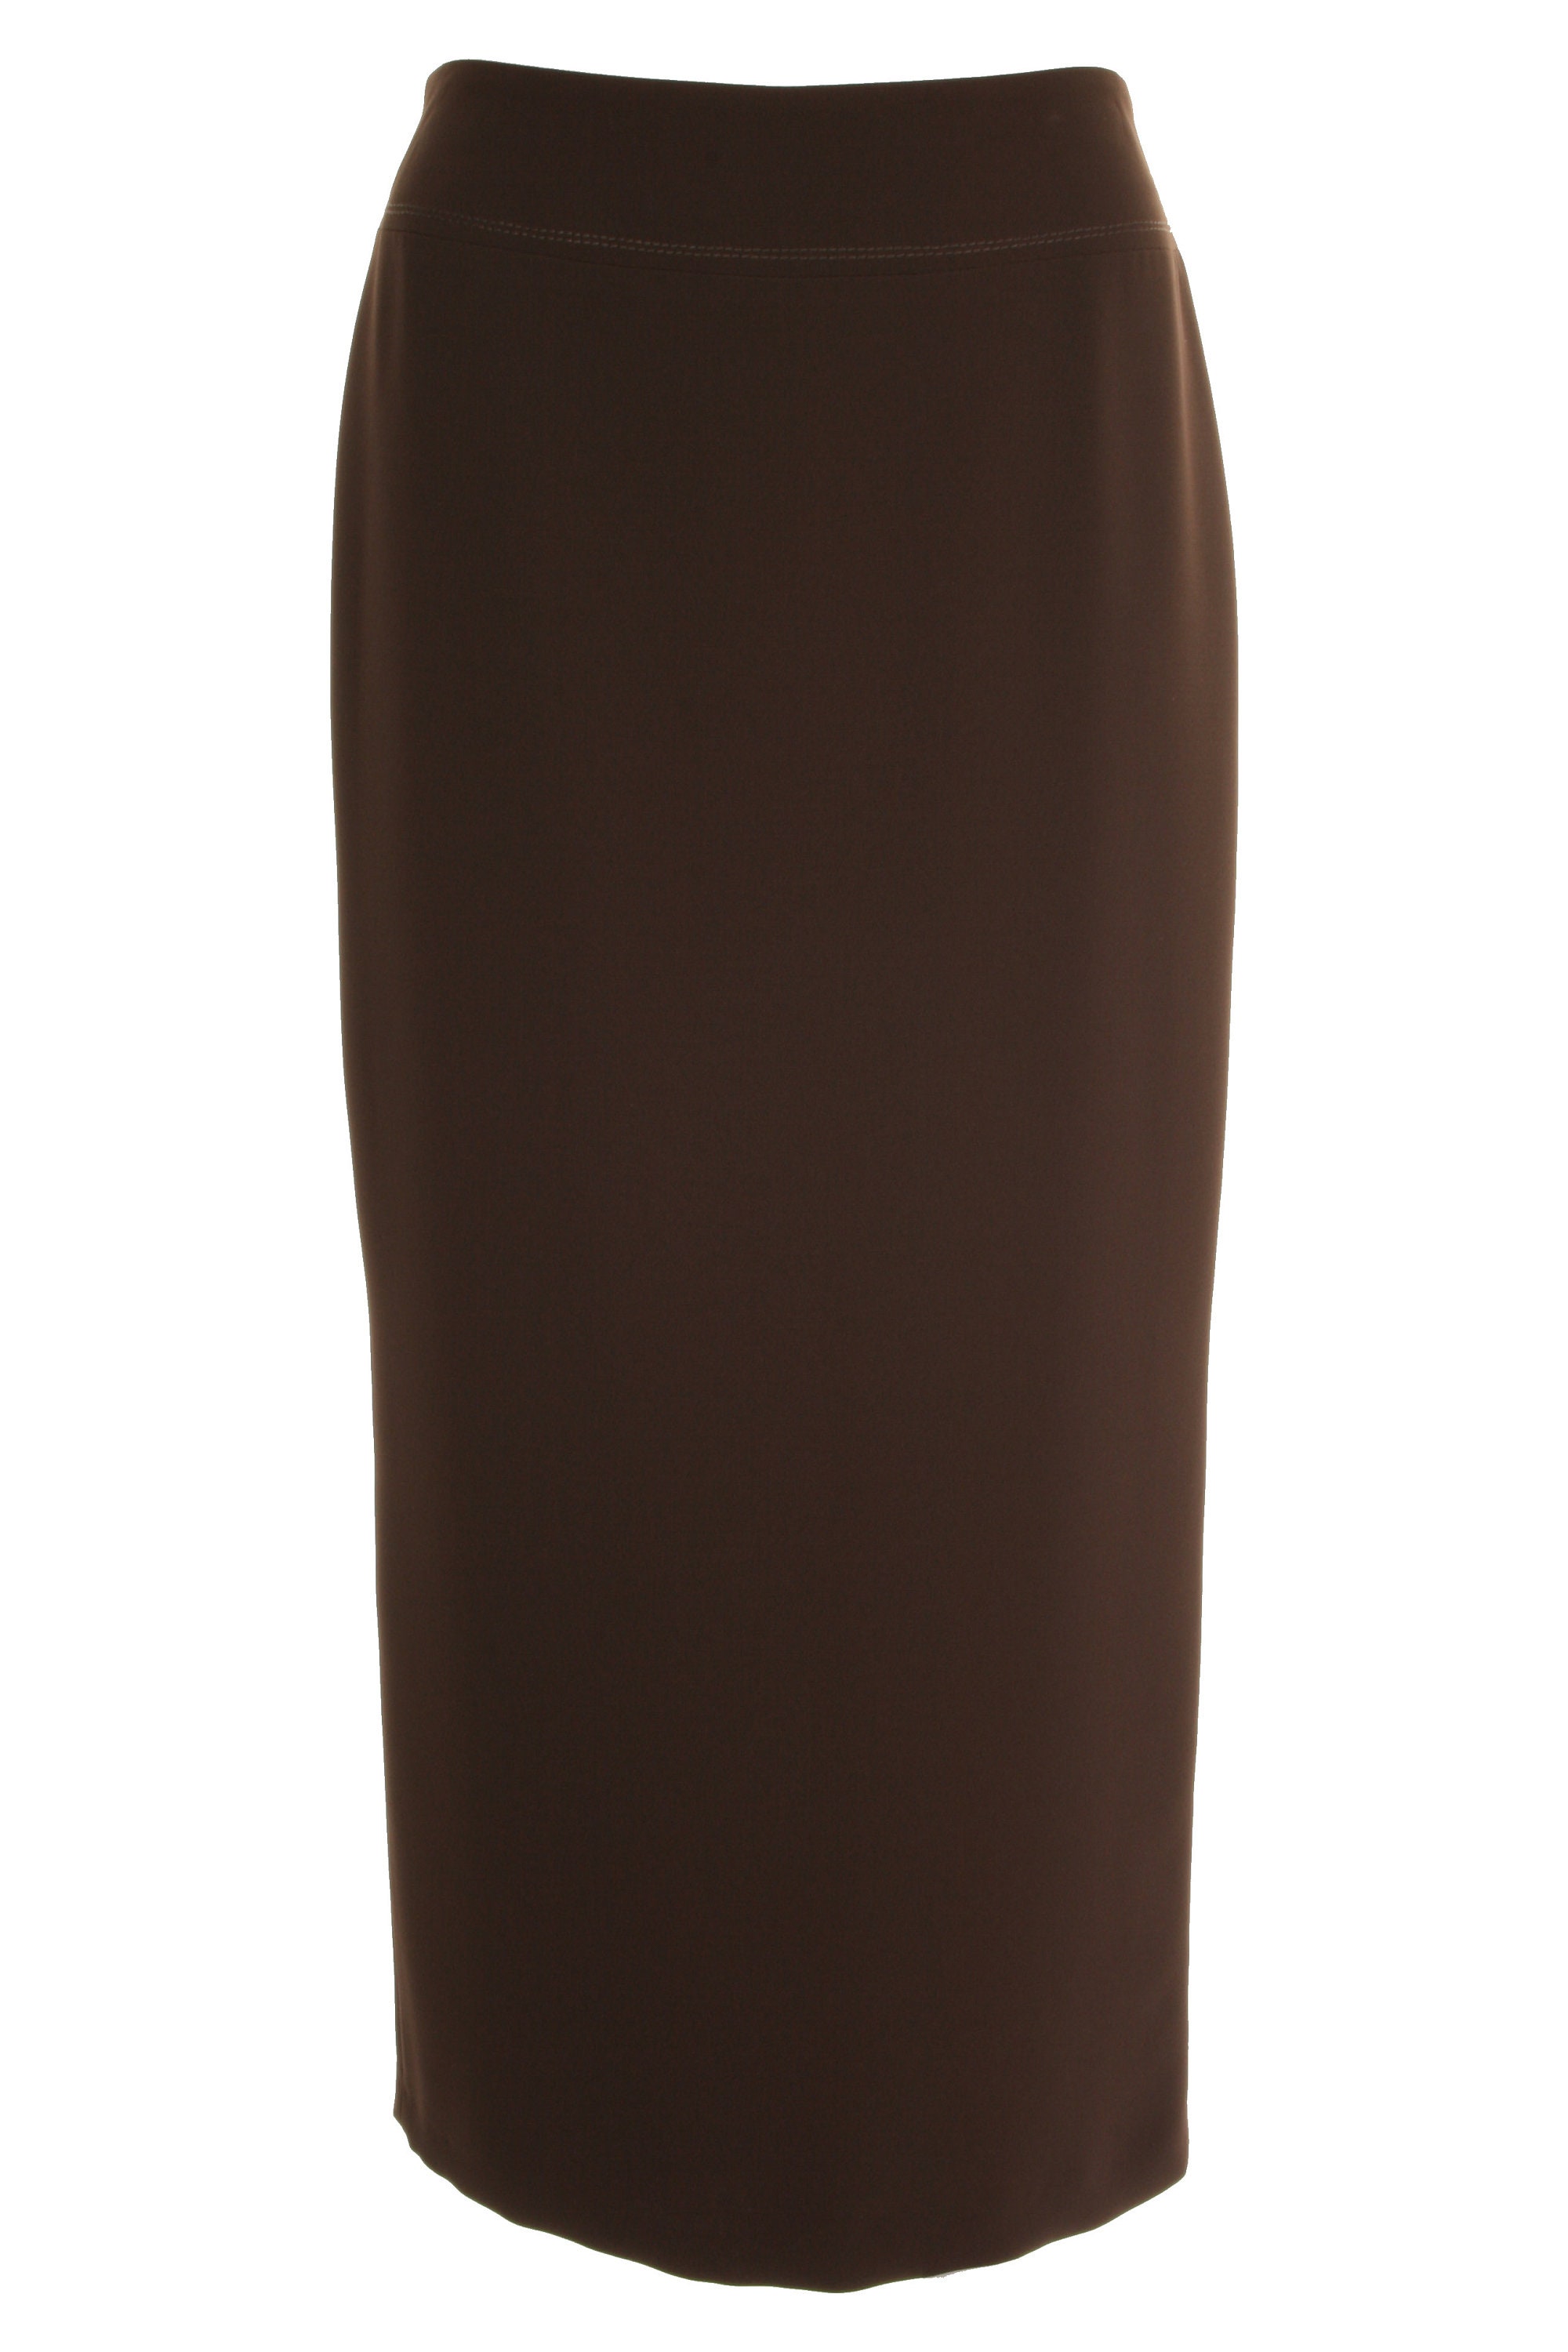 Busy Women's Full Length Max Long Skirt in Black, Navy, Brown, Light ...